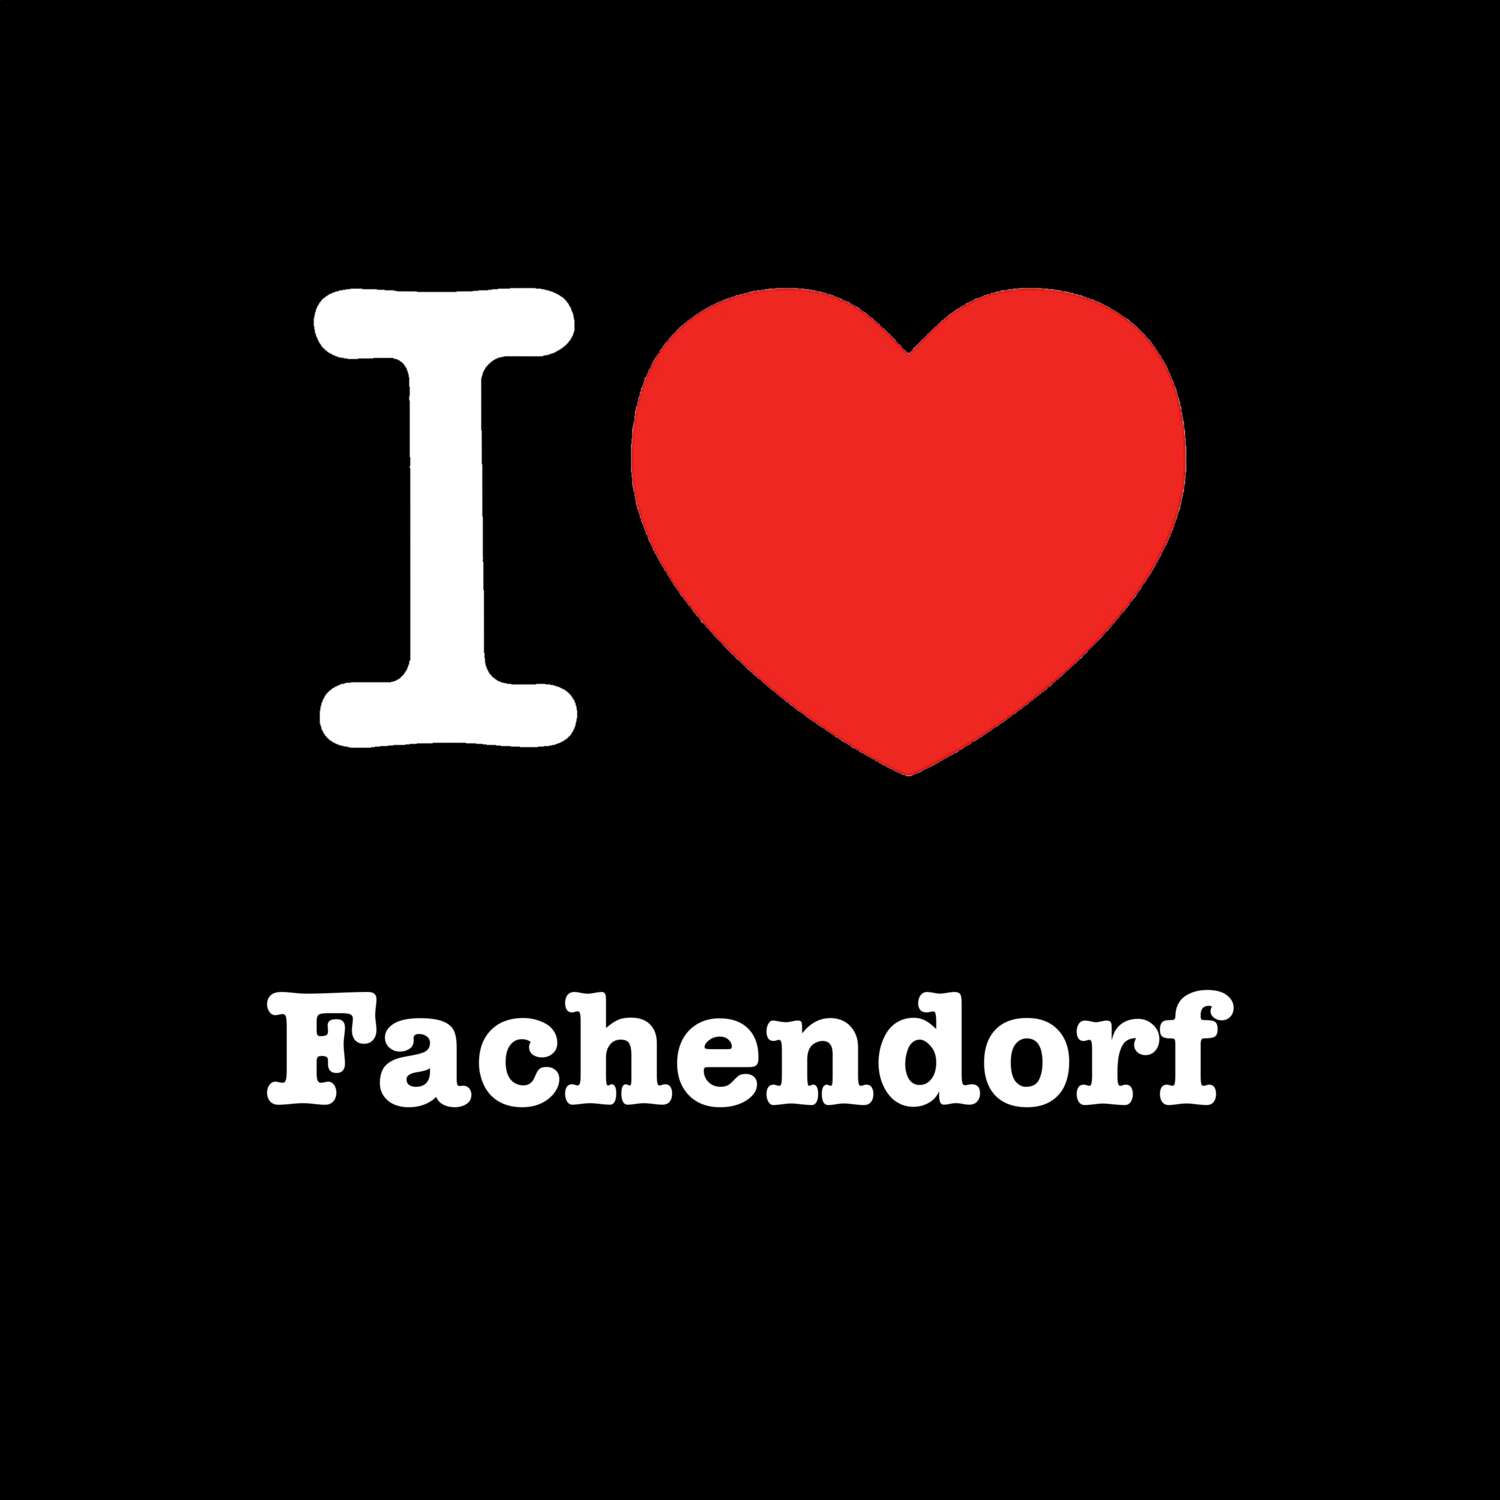 Fachendorf T-Shirt »I love«